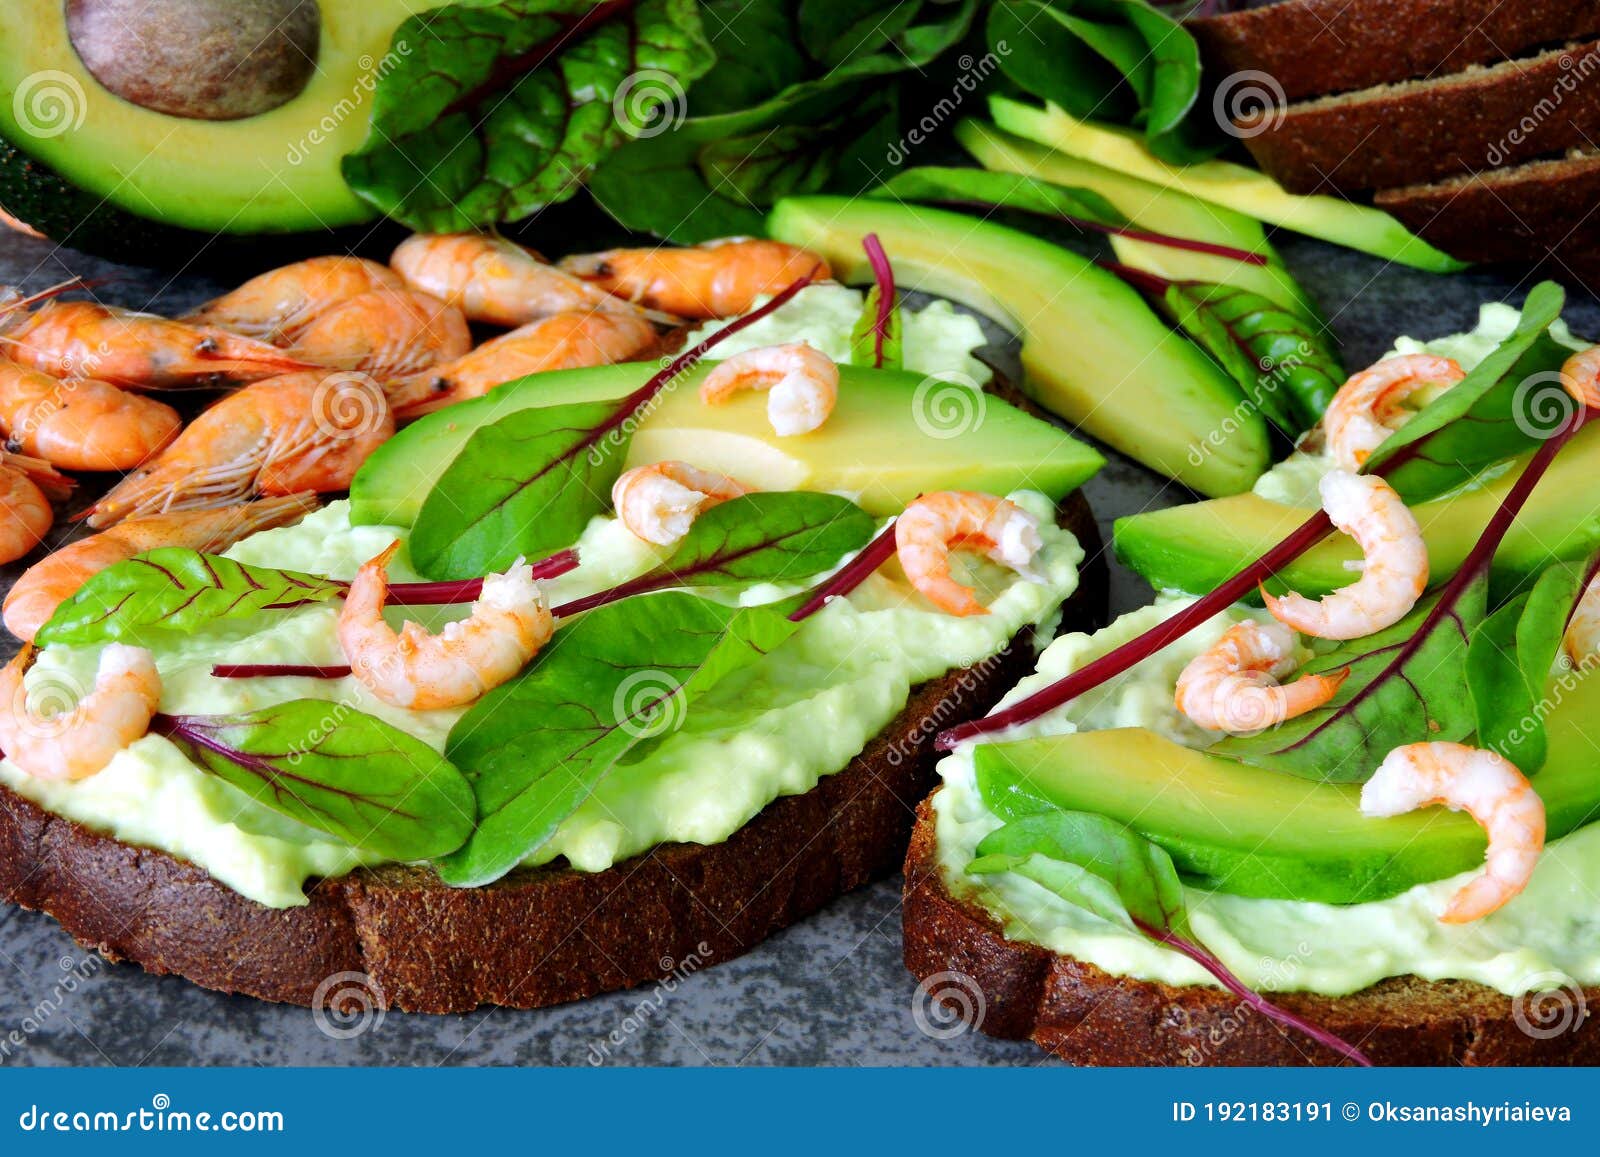 Avocados, Greens, Shrimps. Toast with Avocado Paste and Shrimp. Stock ...